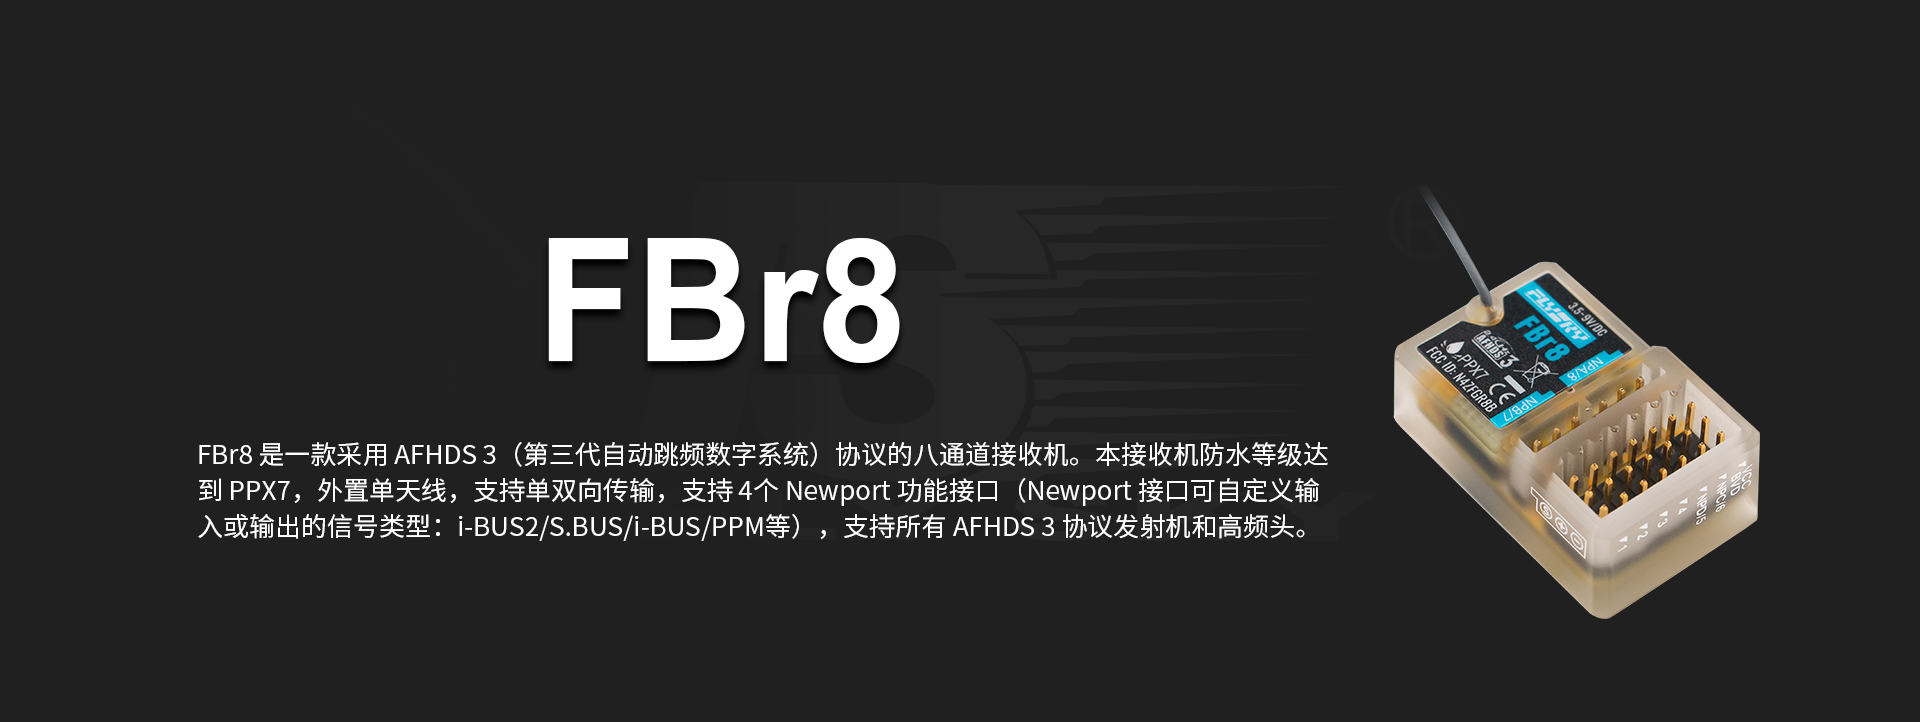 FBr8三代协议接收机